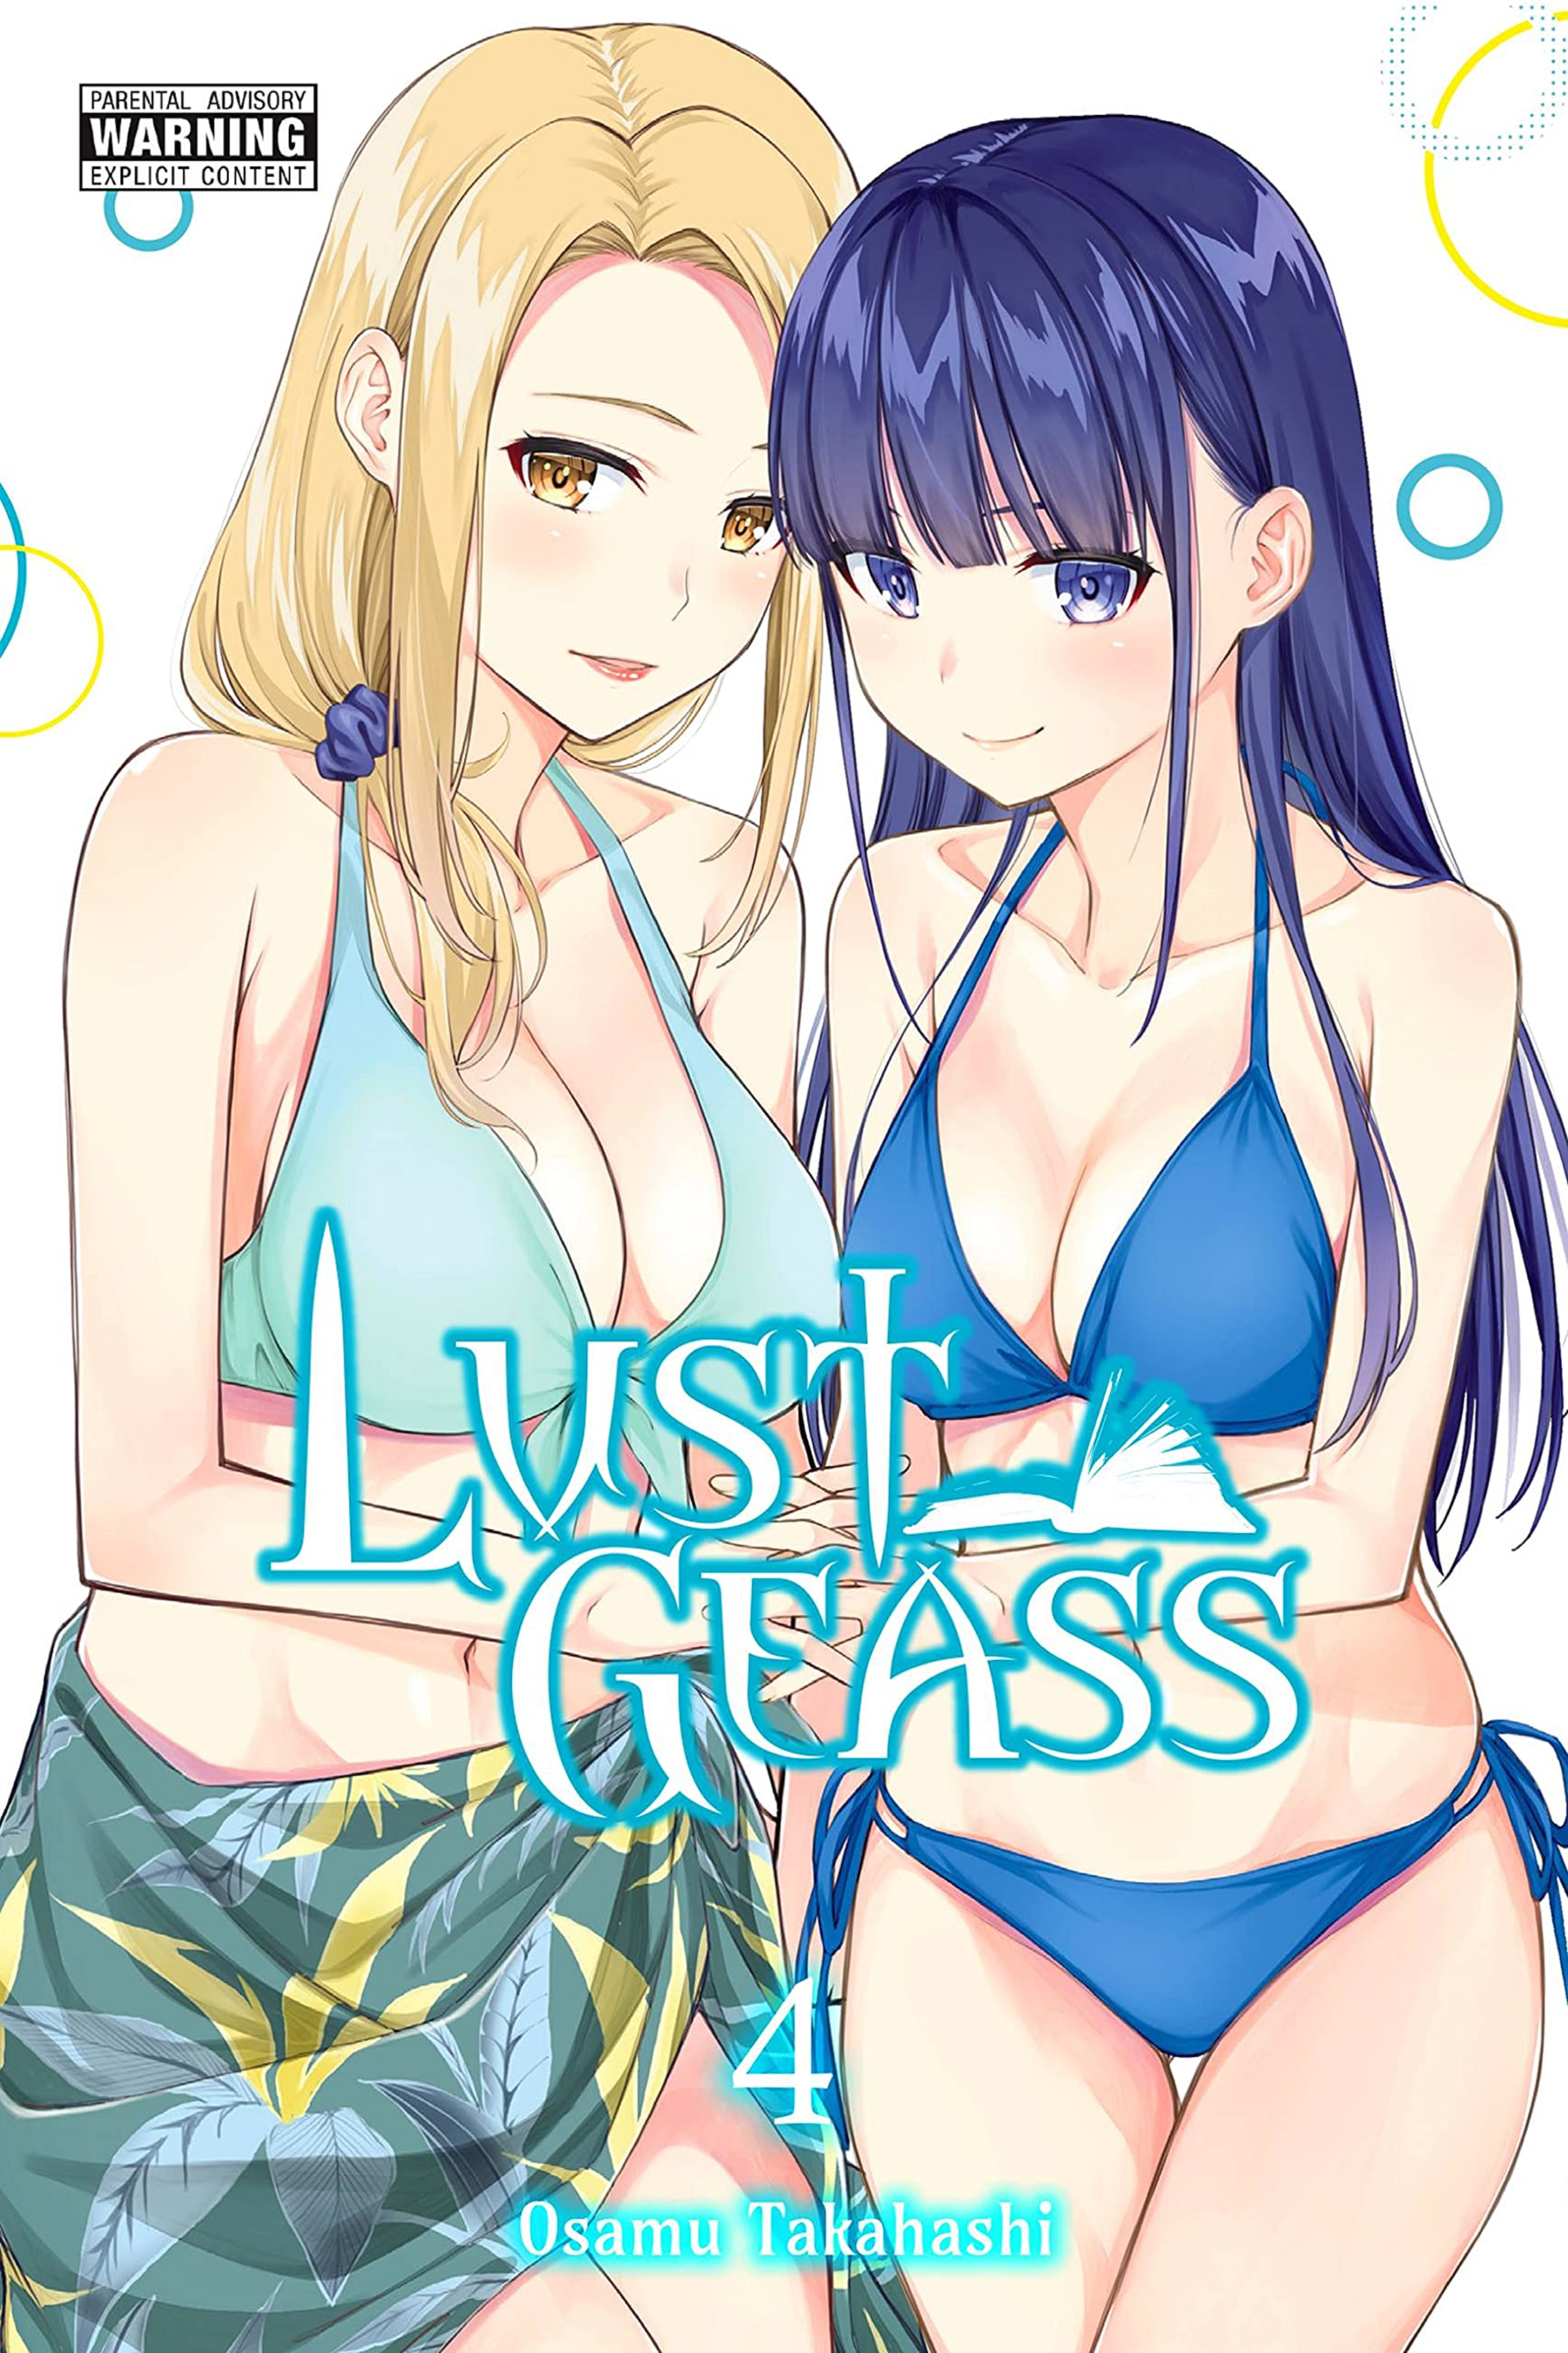 Lust Geass - Volume 4